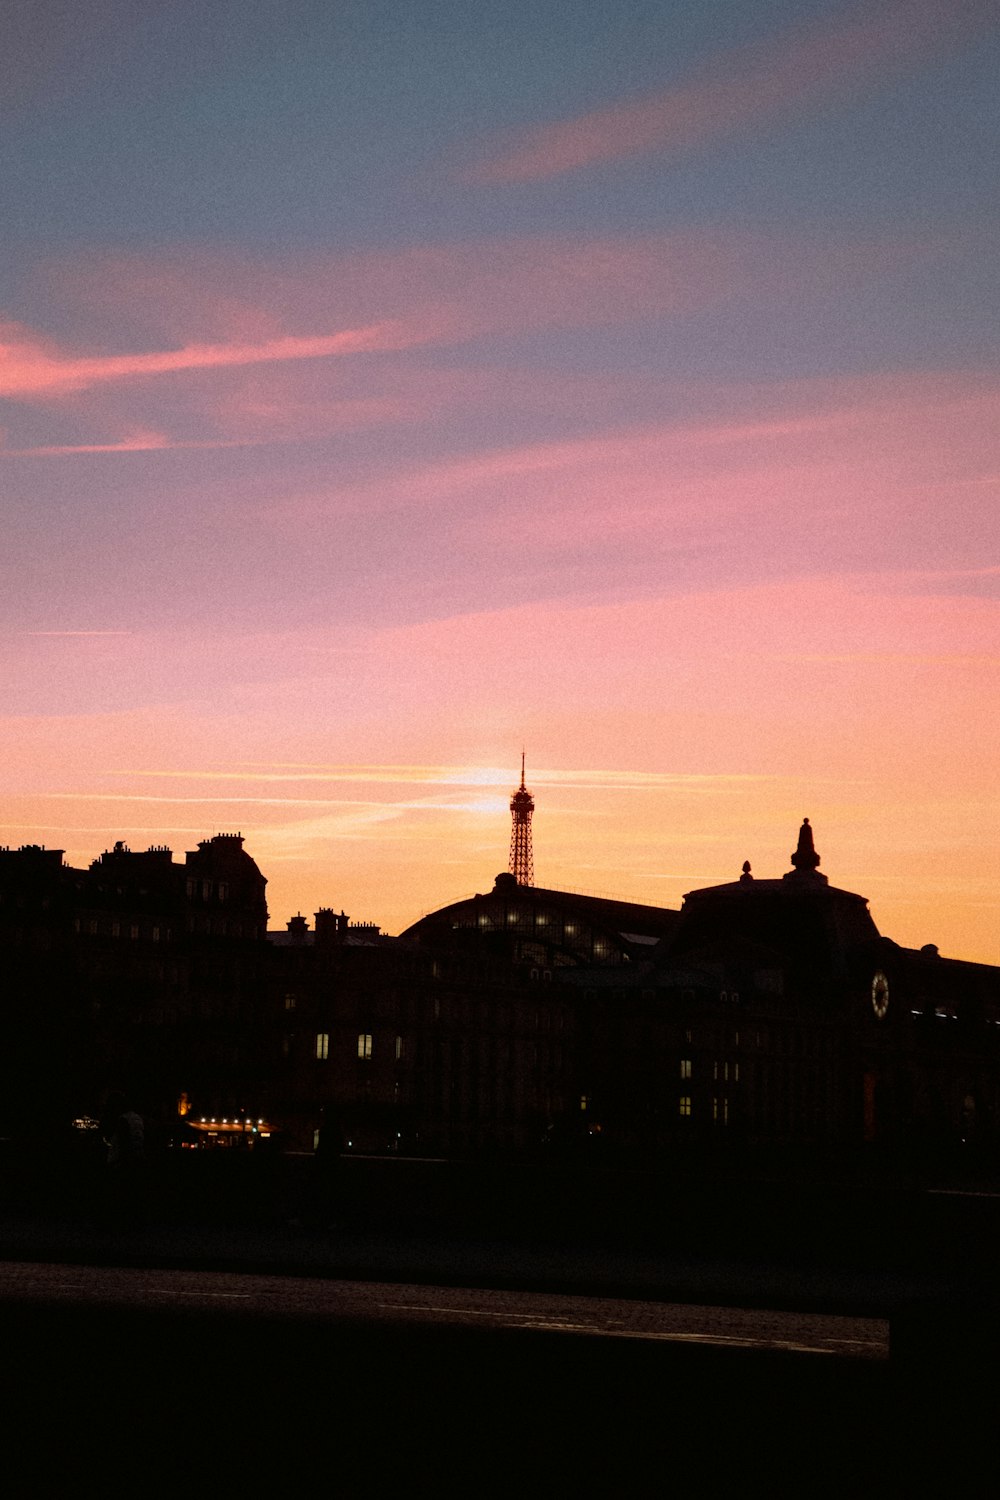 uma vista do pôr do sol de uma cidade com uma torre do relógio ao longe